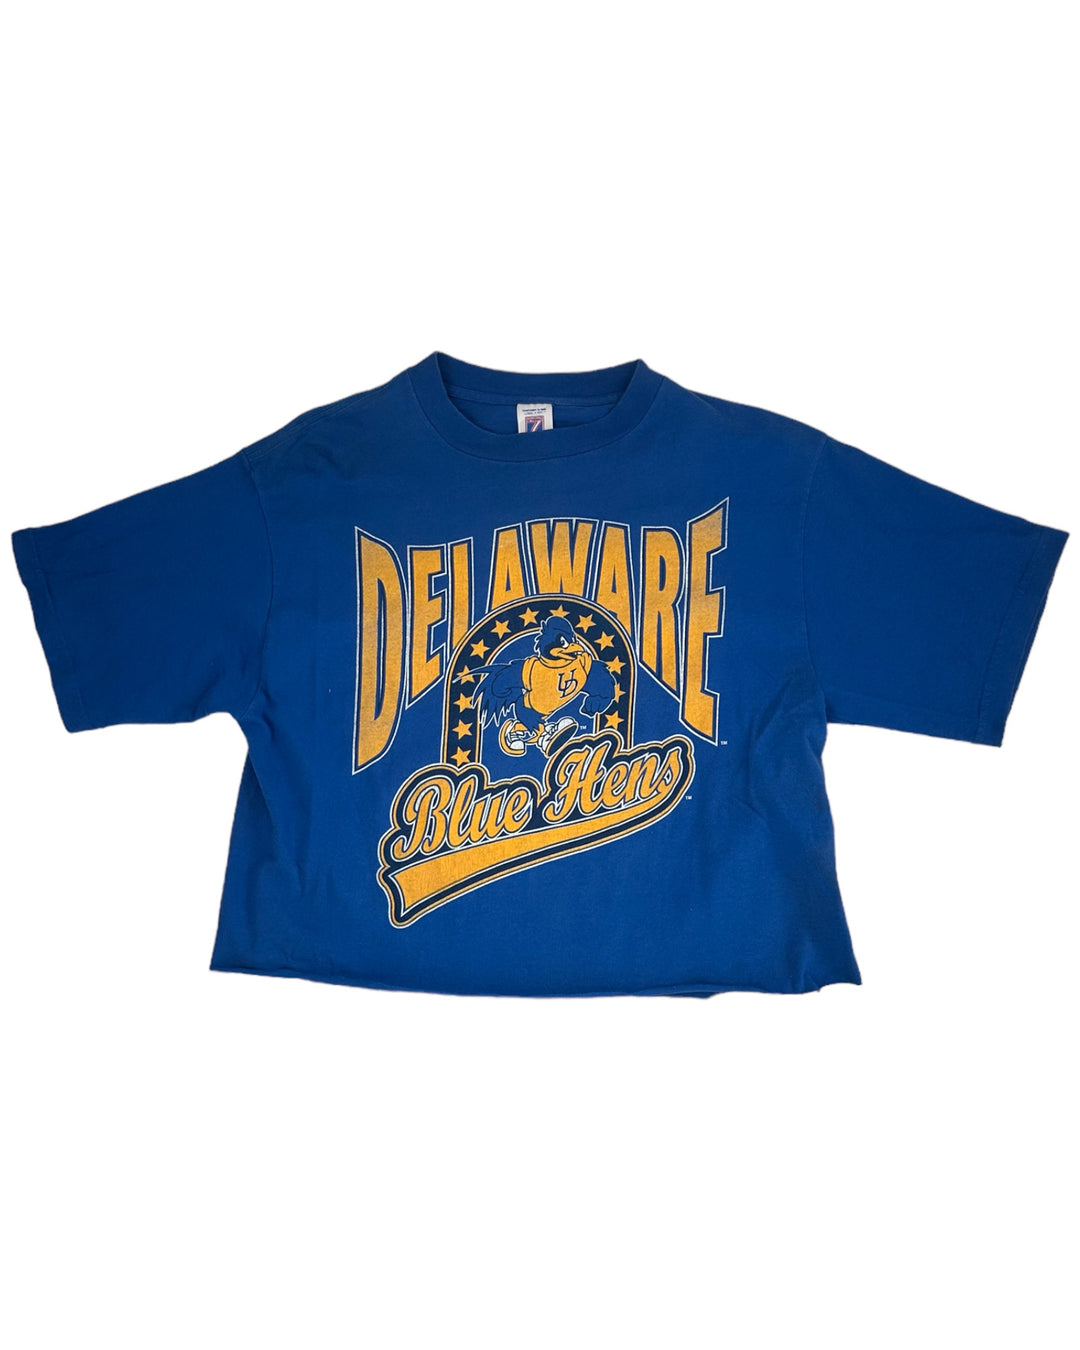 Delaware Vintage Cropped T-Shirt